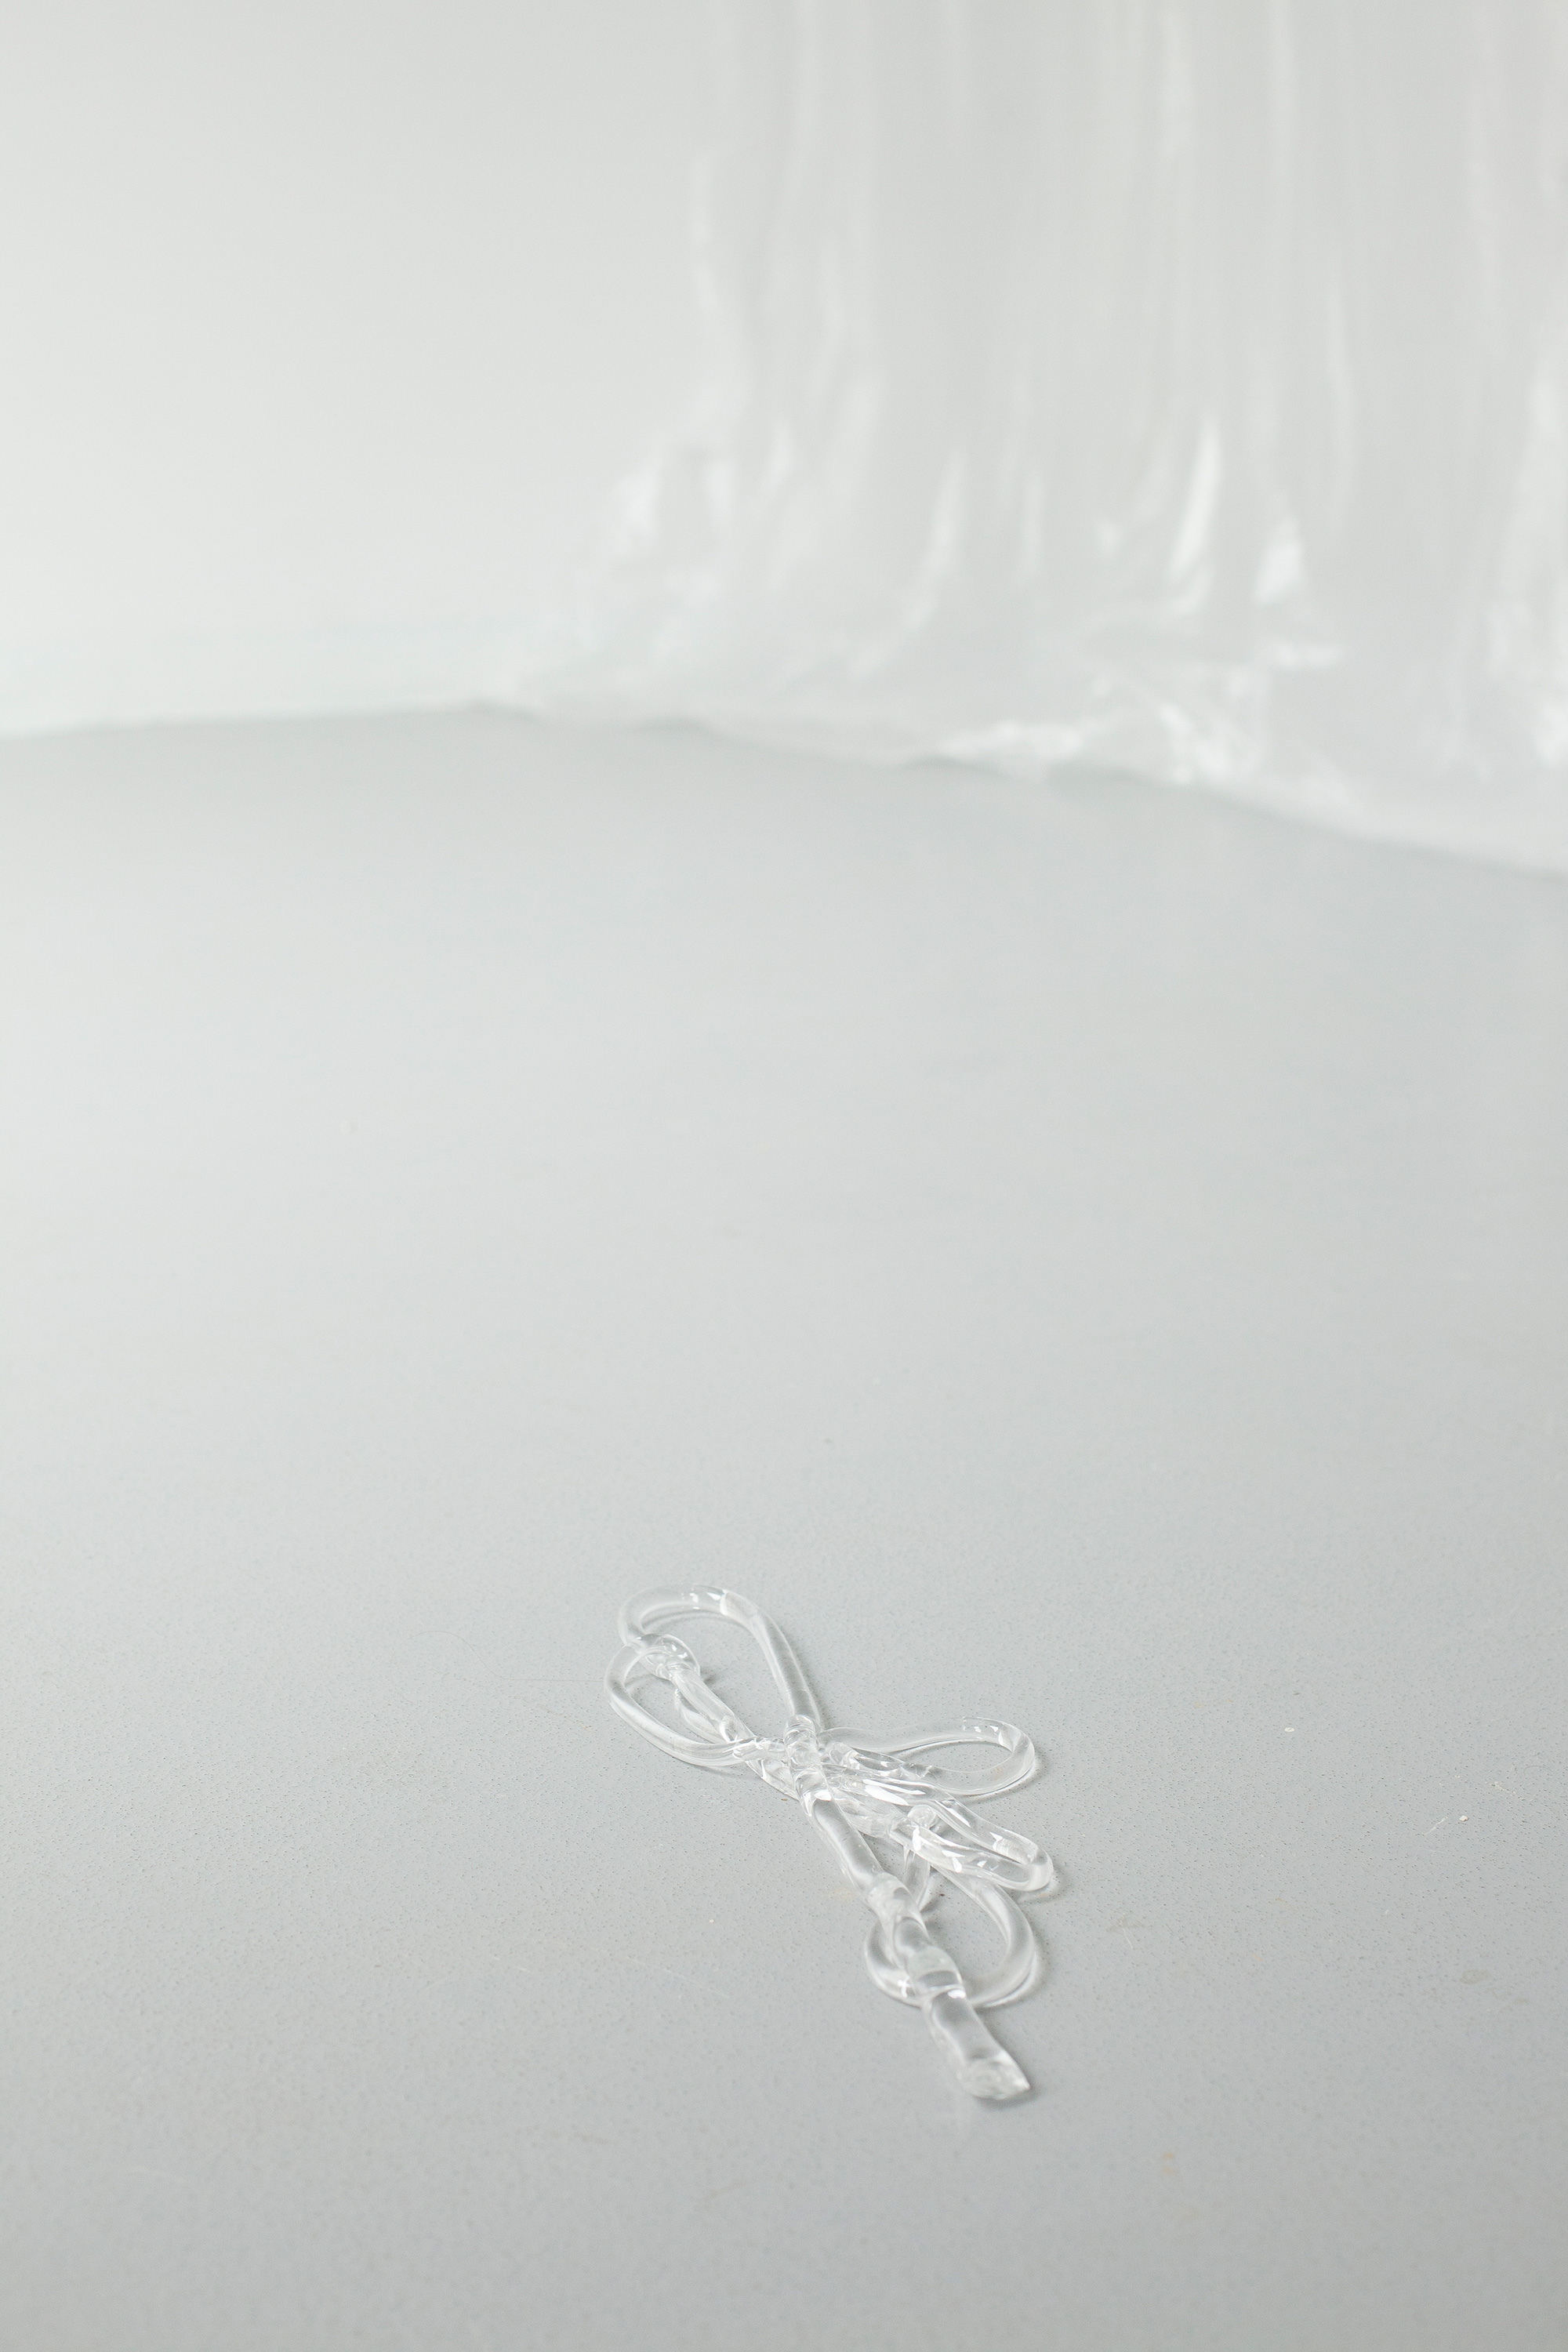 Max Syron, standardy osobiste, zmienne wymiary, pełna długość – 177 cm, średnica – 1,5 cm, 9 x 6.5 x 9 cali, 2015